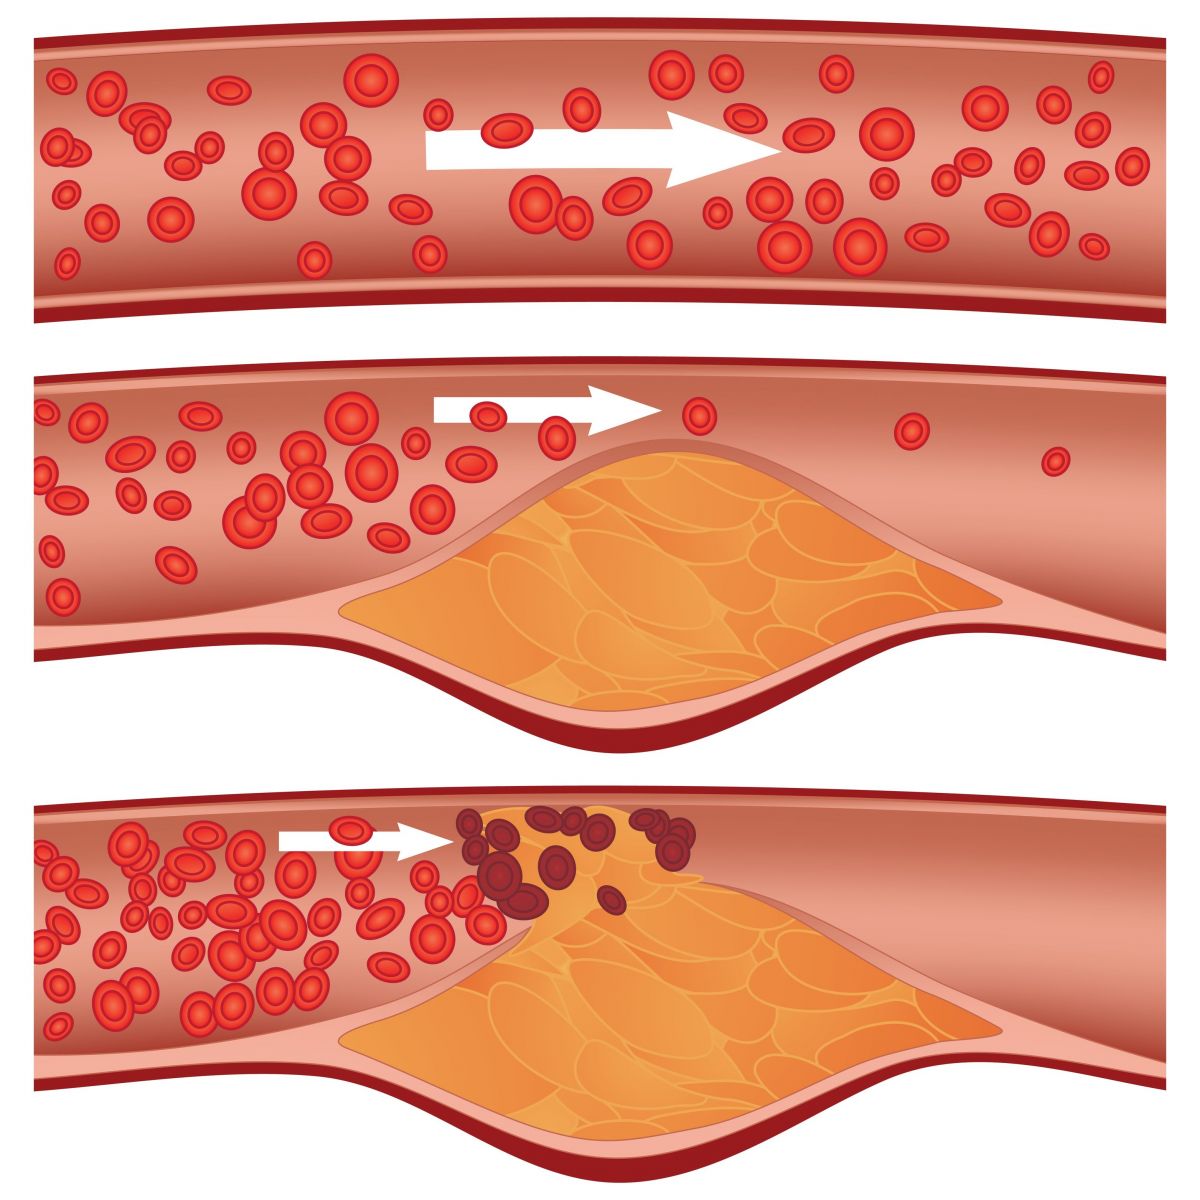 الكوليسترول سيف ذو حدين: المستويات المرتفعة من الكوليسترول الضار تسبب الى انسداد الاوعية الدموية